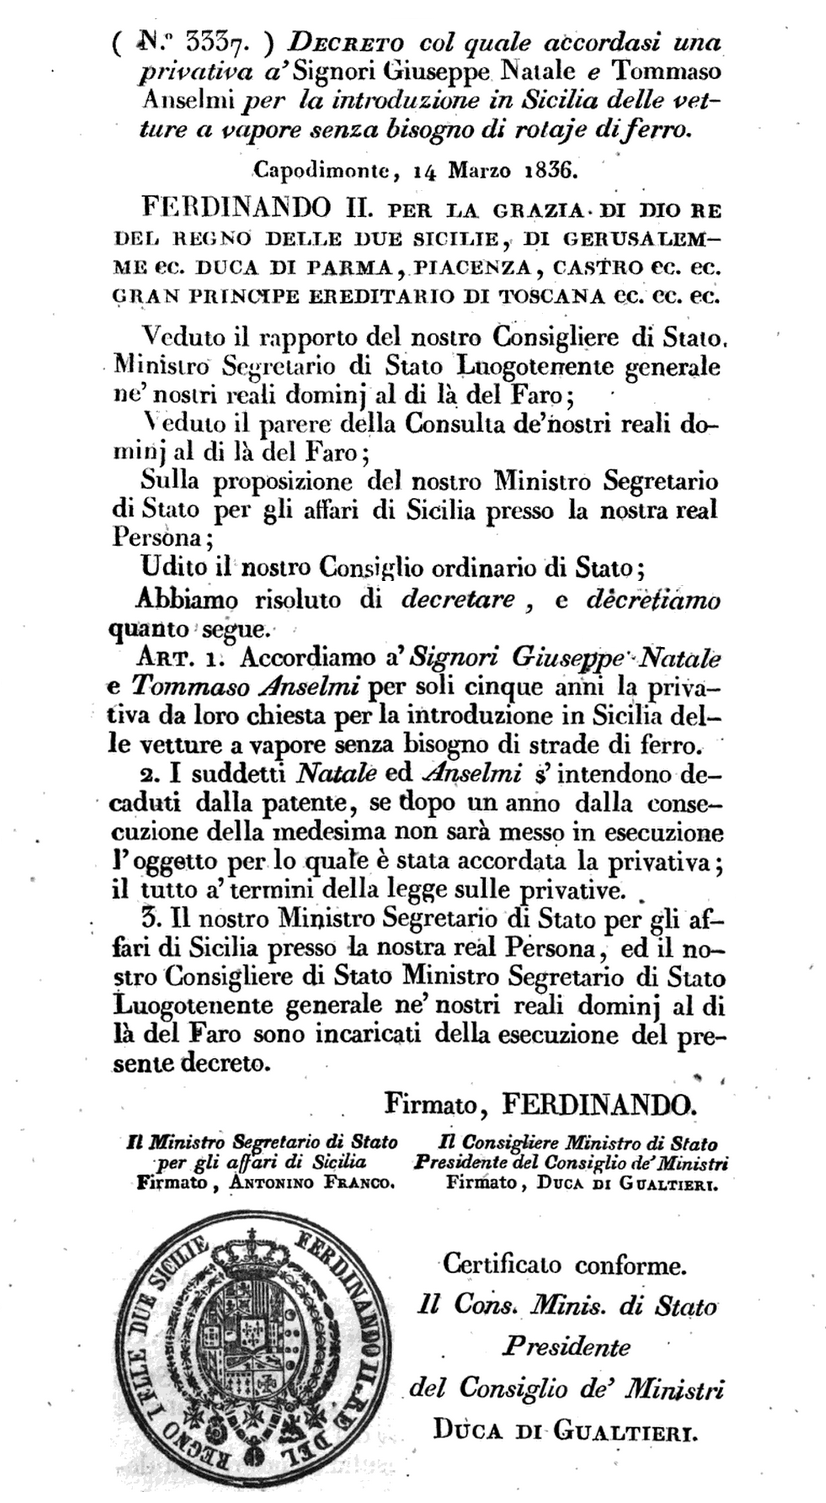 Decreto Ferdinando II automobile